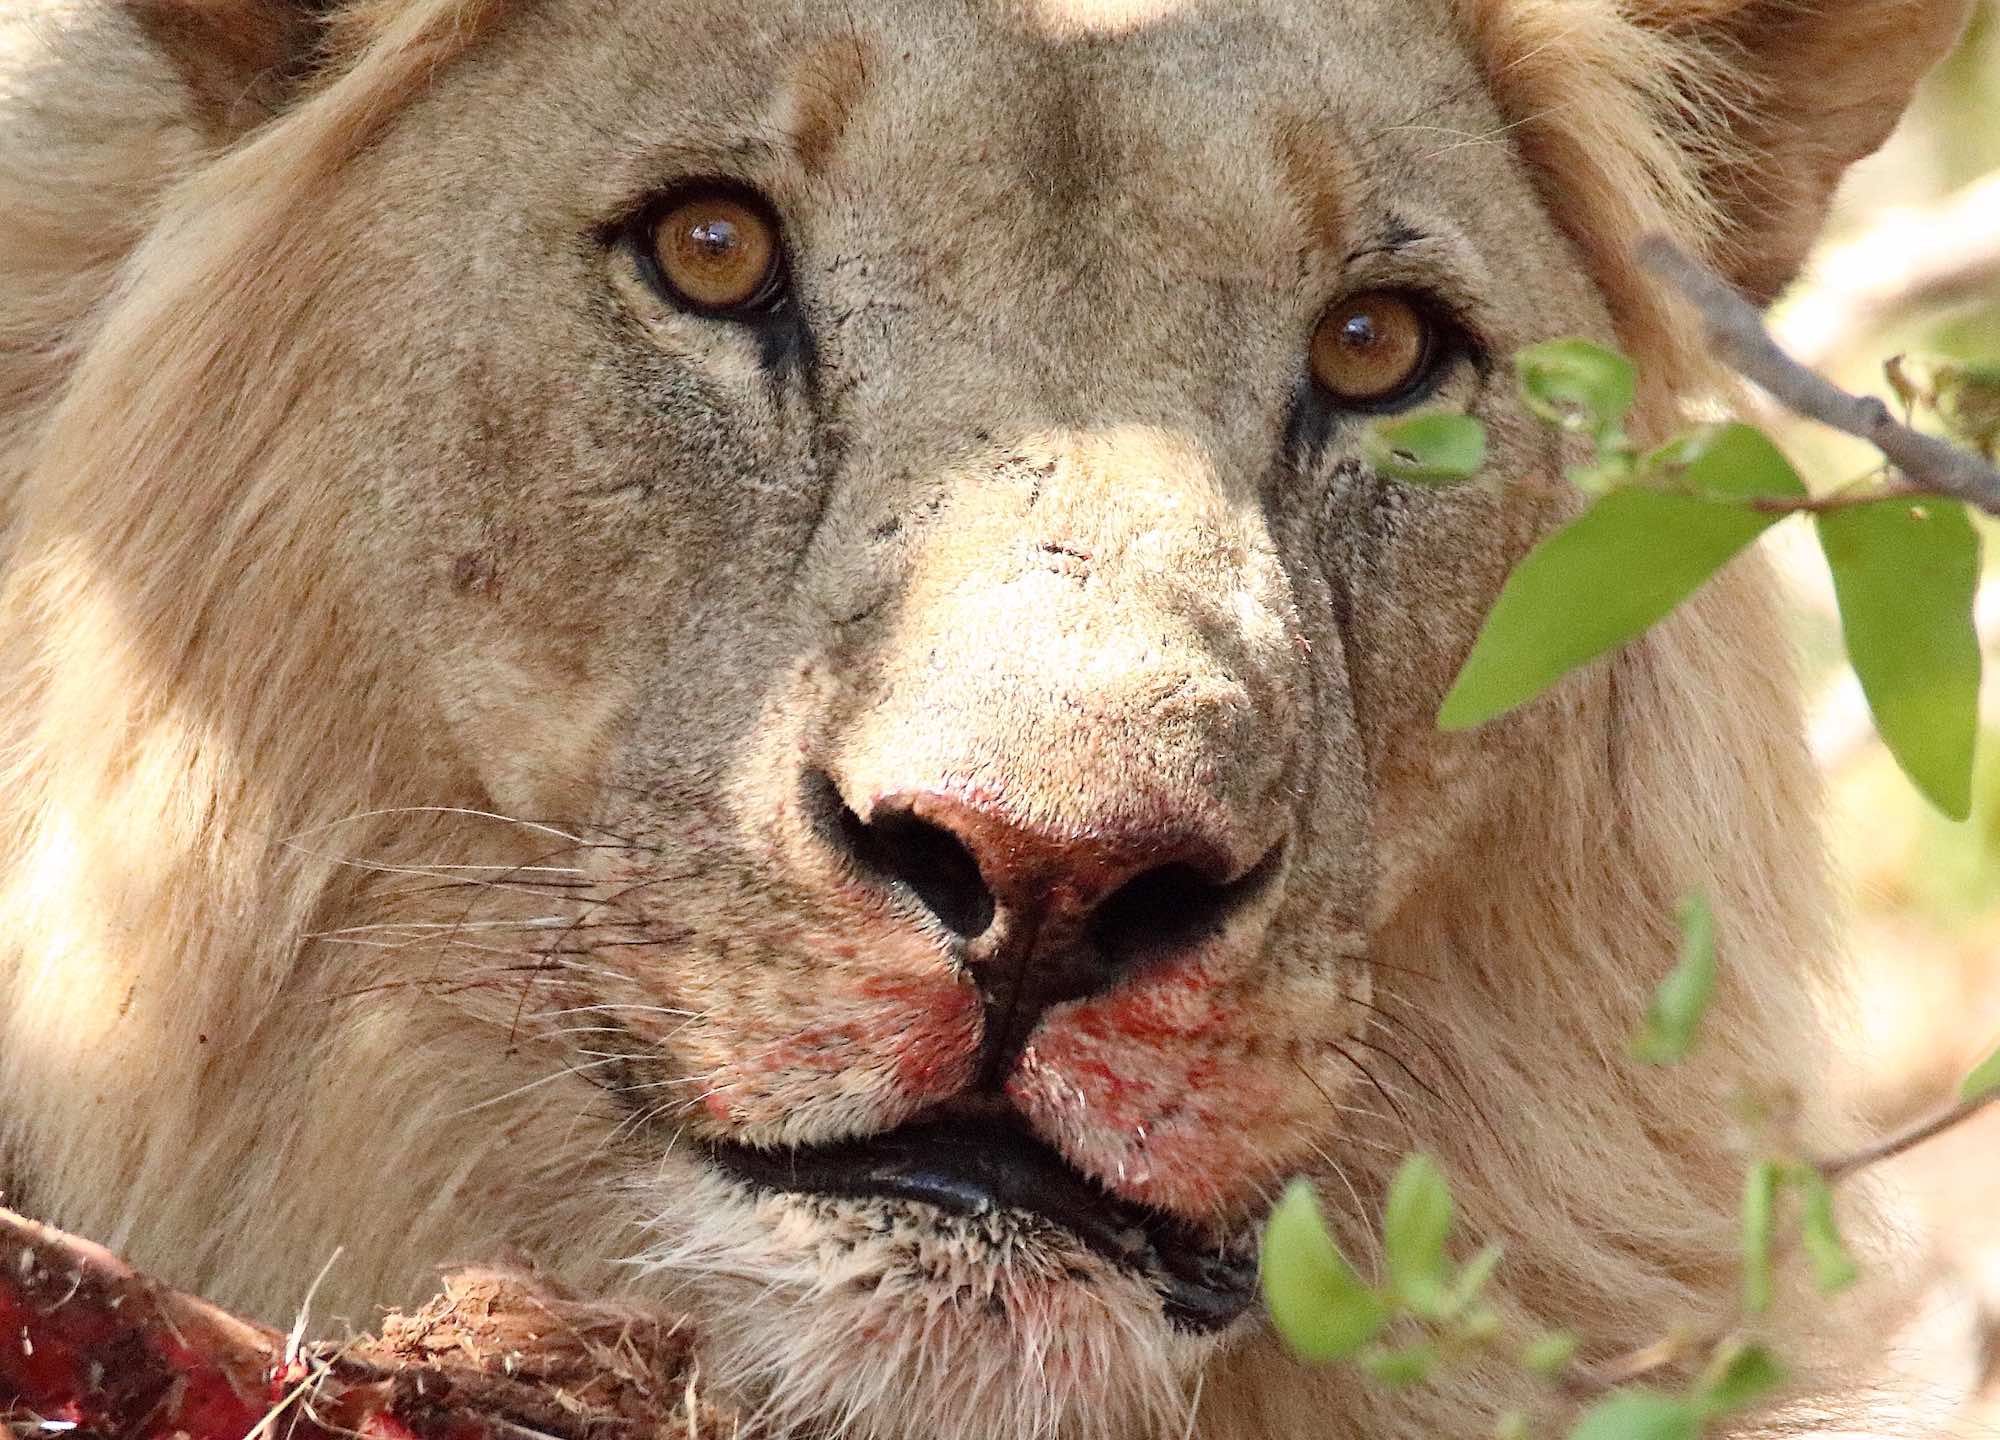 A closeup of a lion's face.